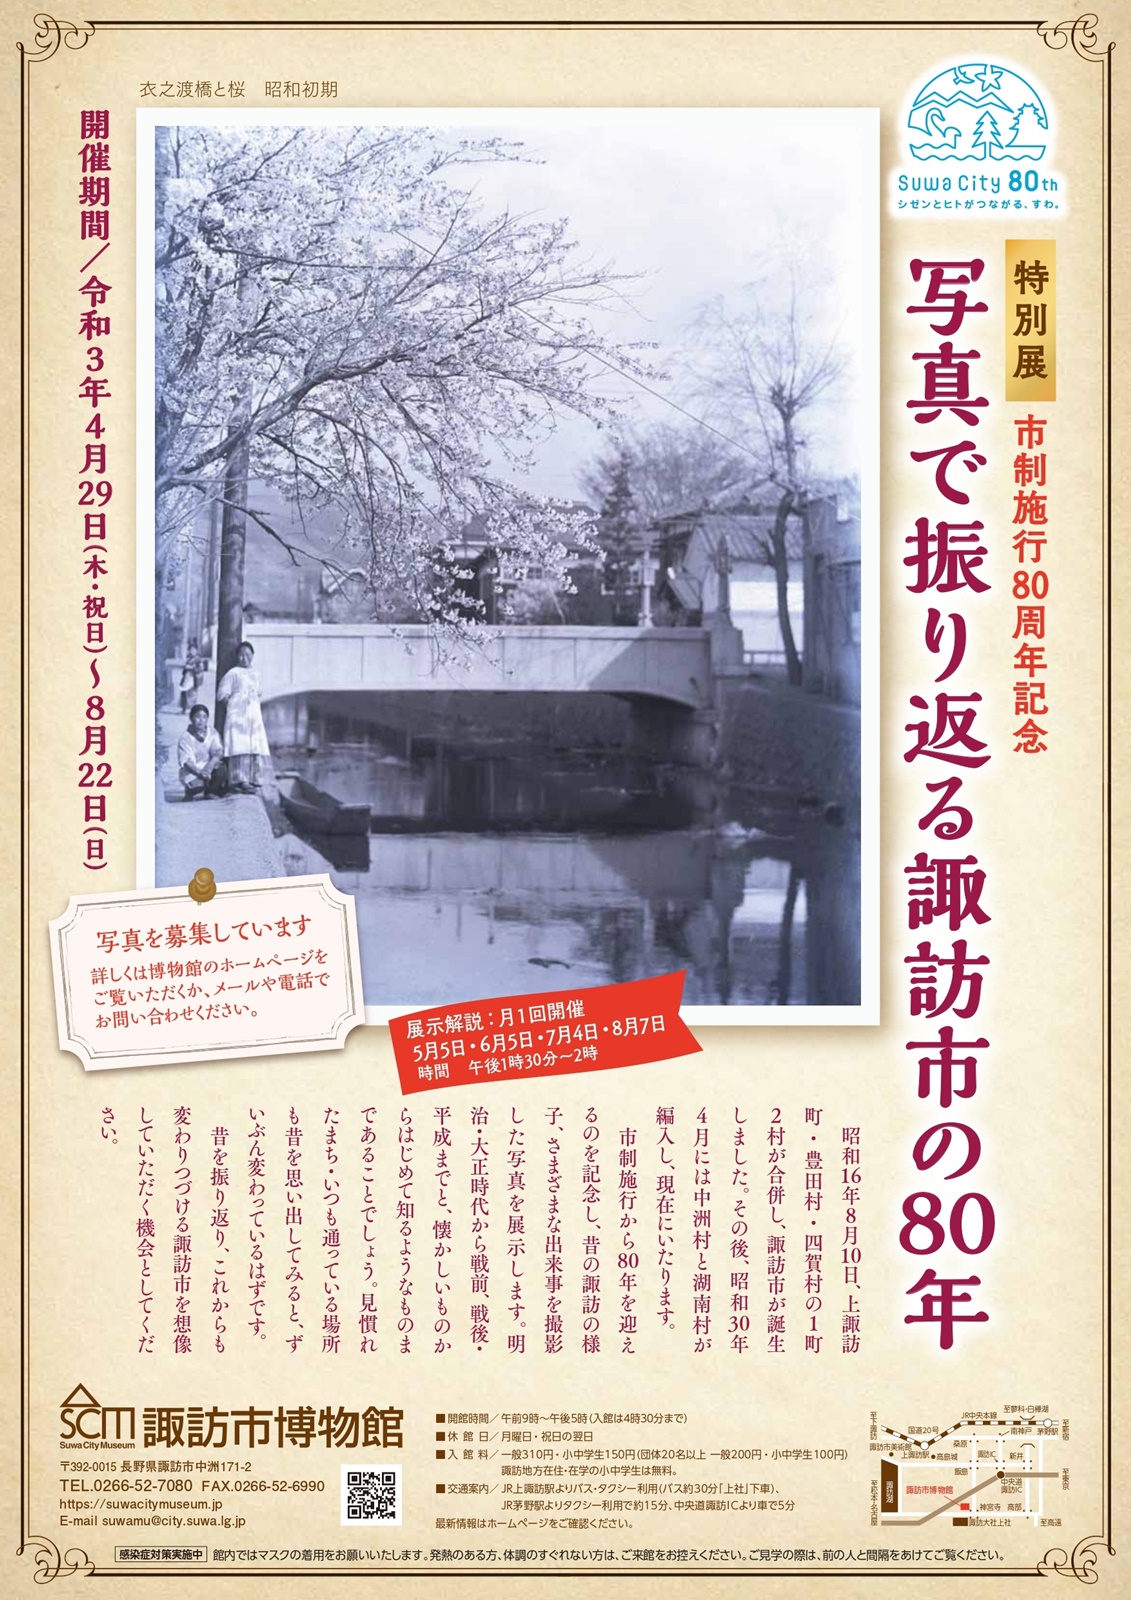 特別展『写真で振り返る諏訪市の80年』開催のお知らせ